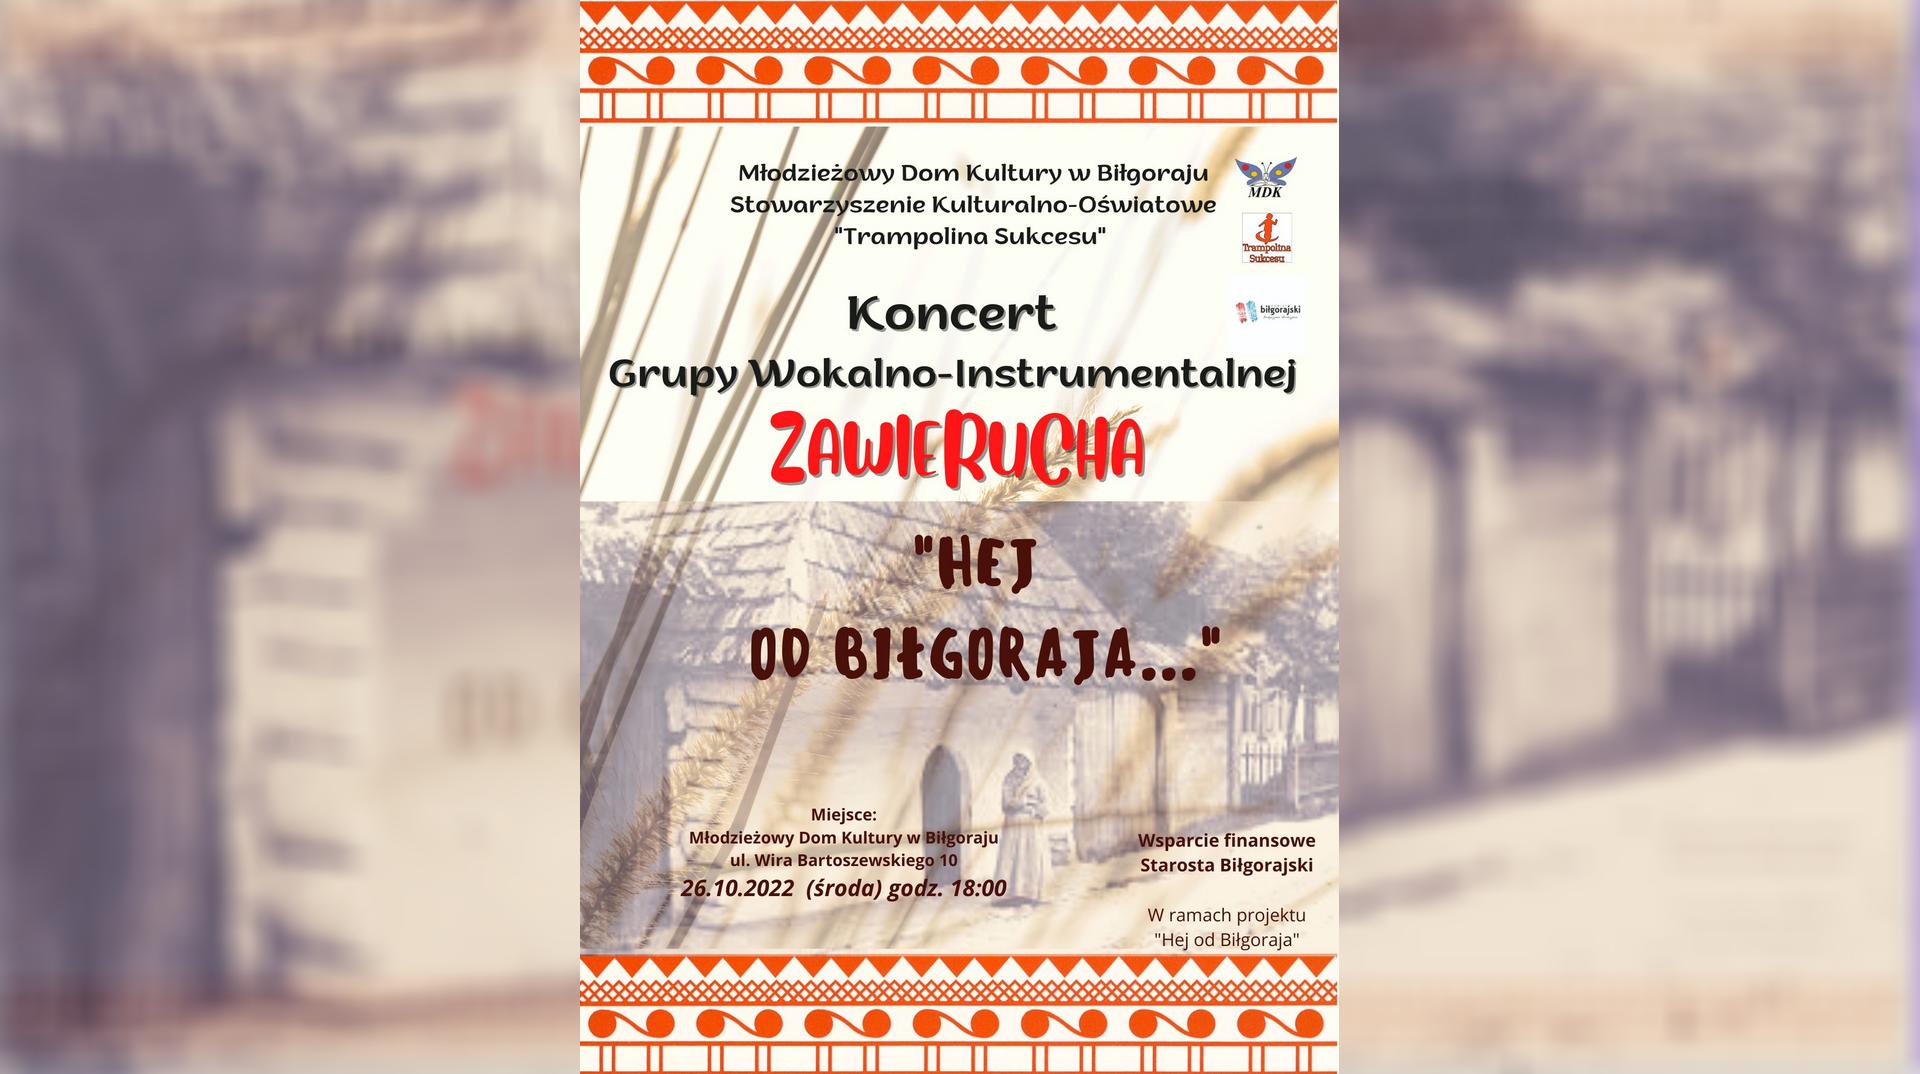 Plakat - Koncert grupy wokalno-instrumentalnej Zawierucha 26 października 2022